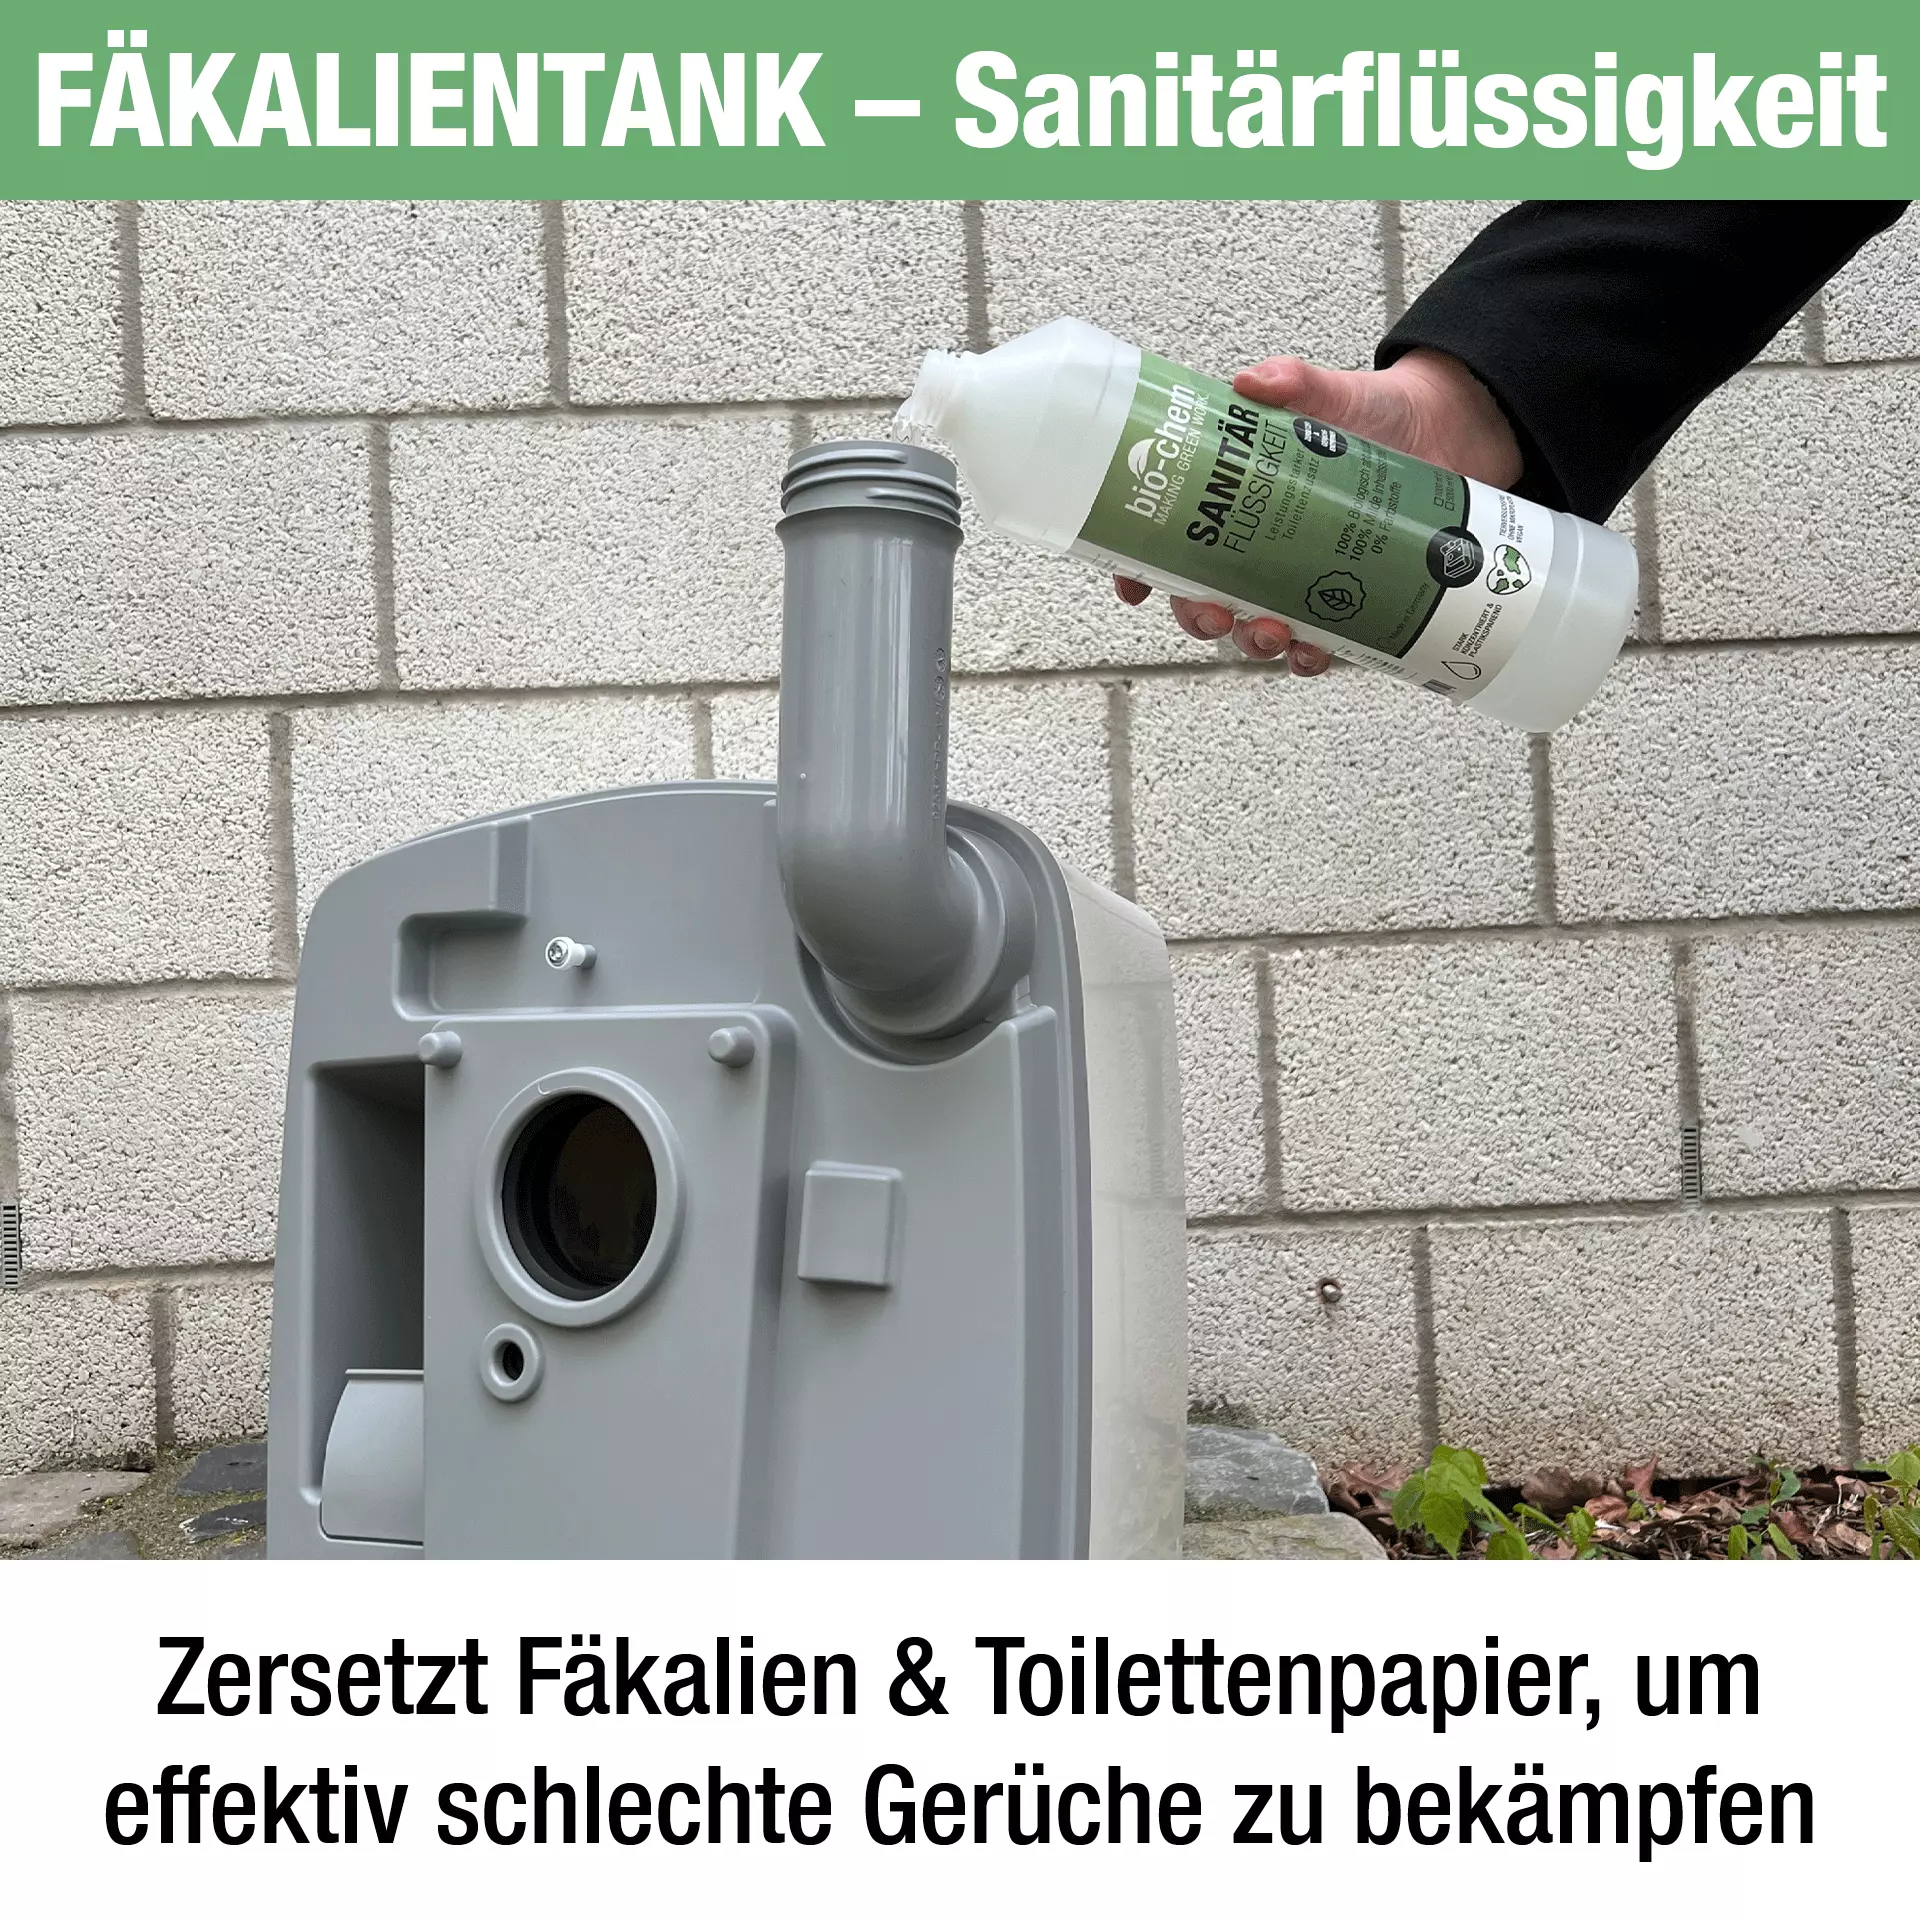 Grauwassertank effektiv reinigen - Hygiene & Sanitär - Hilfe